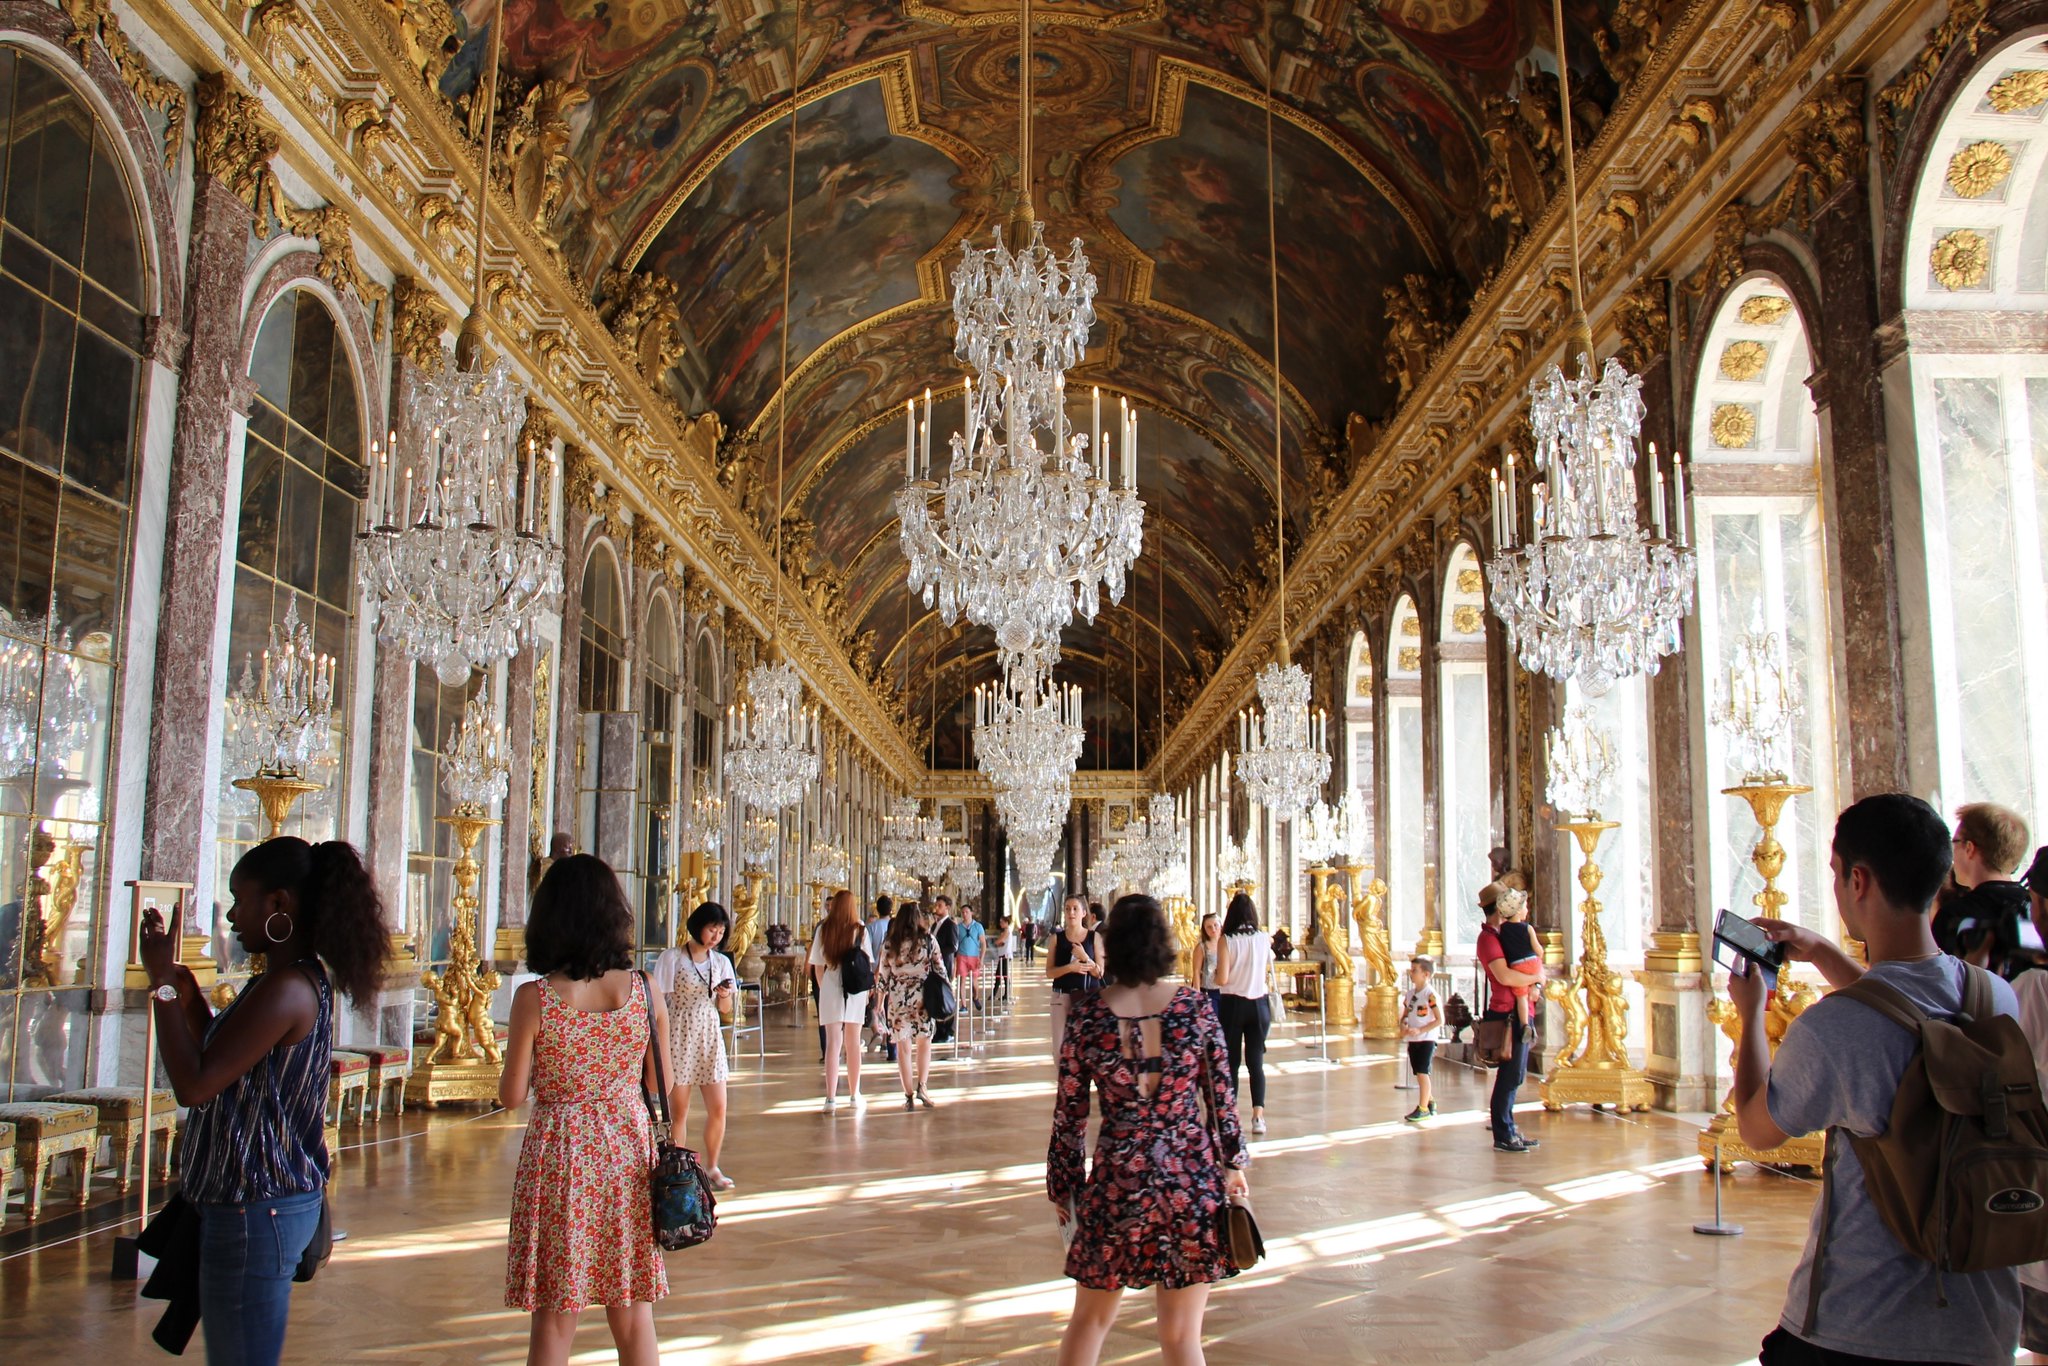 Chateau versailles. Версальский дворец, Версаль дворец Версаля. Королевский дворец в Версале.